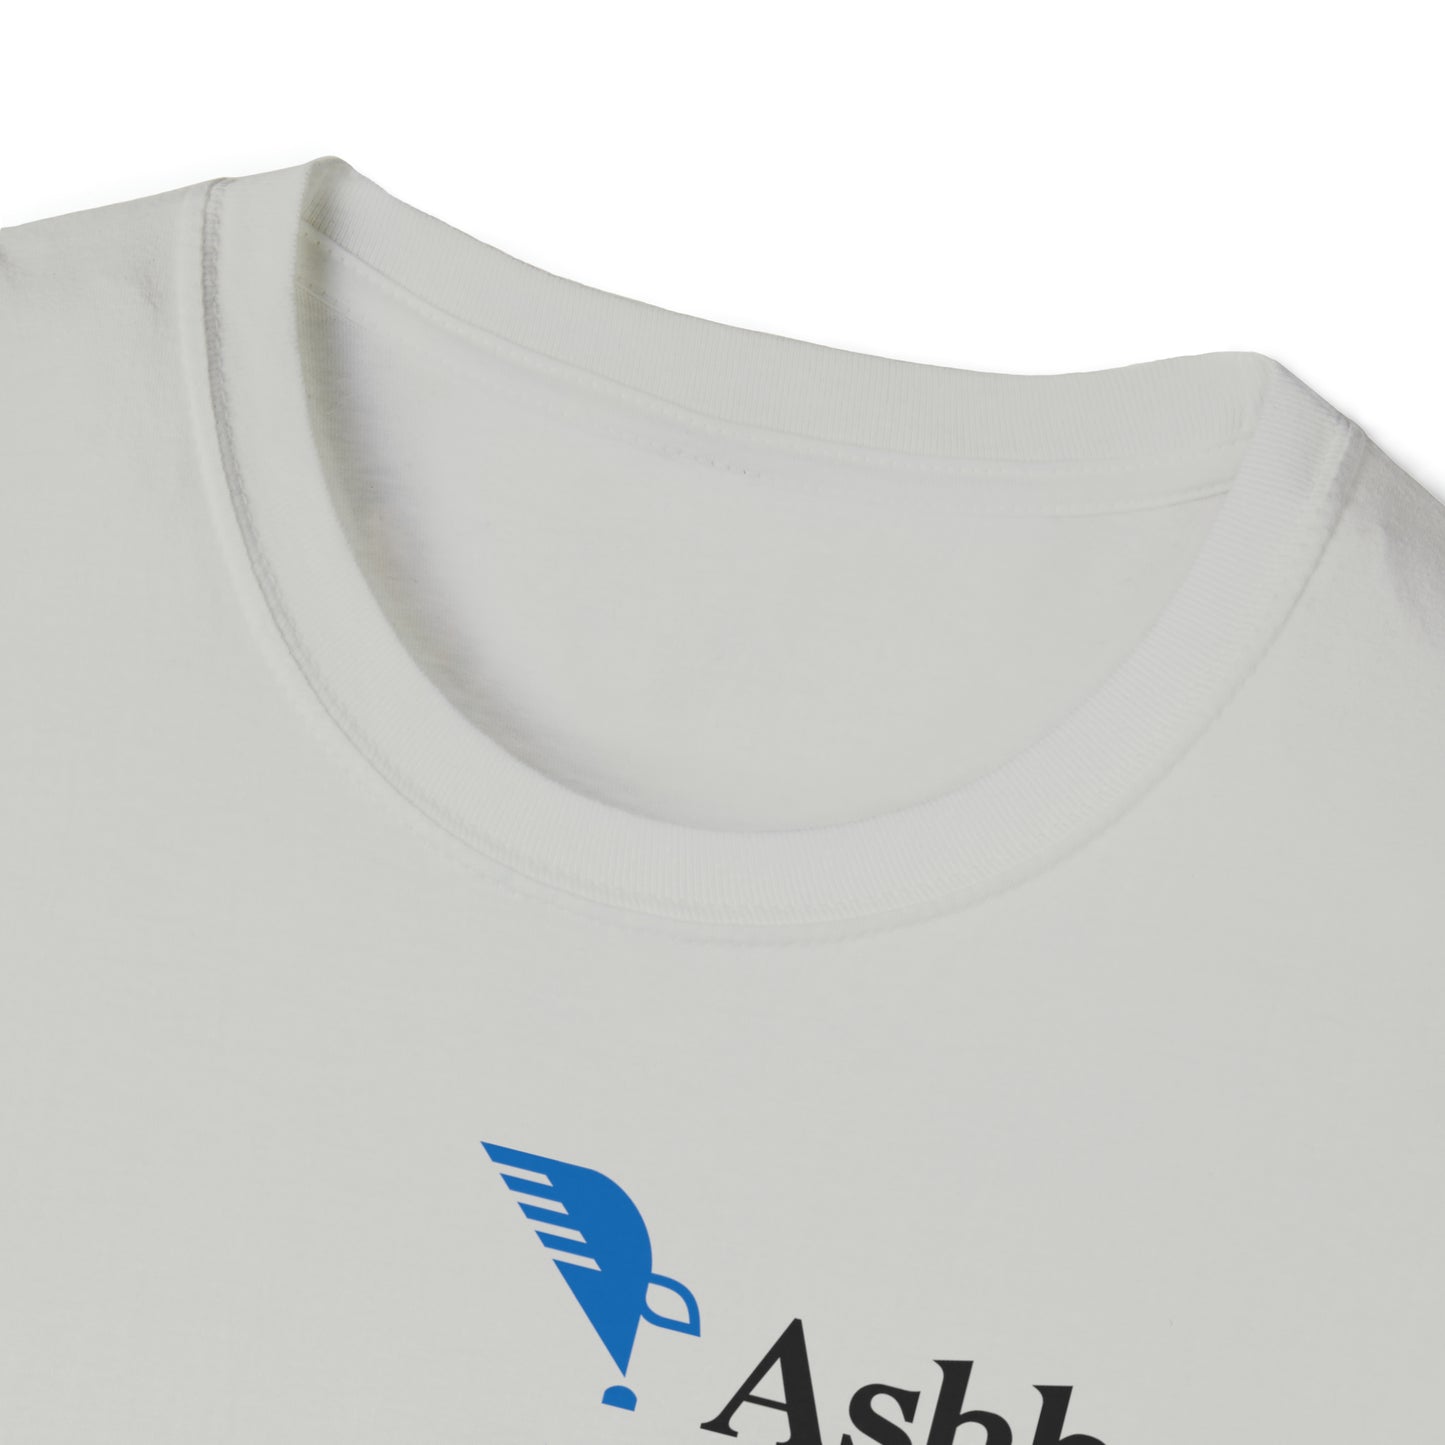 Ashbrook Dad Unisex Softstyle T-Shirt